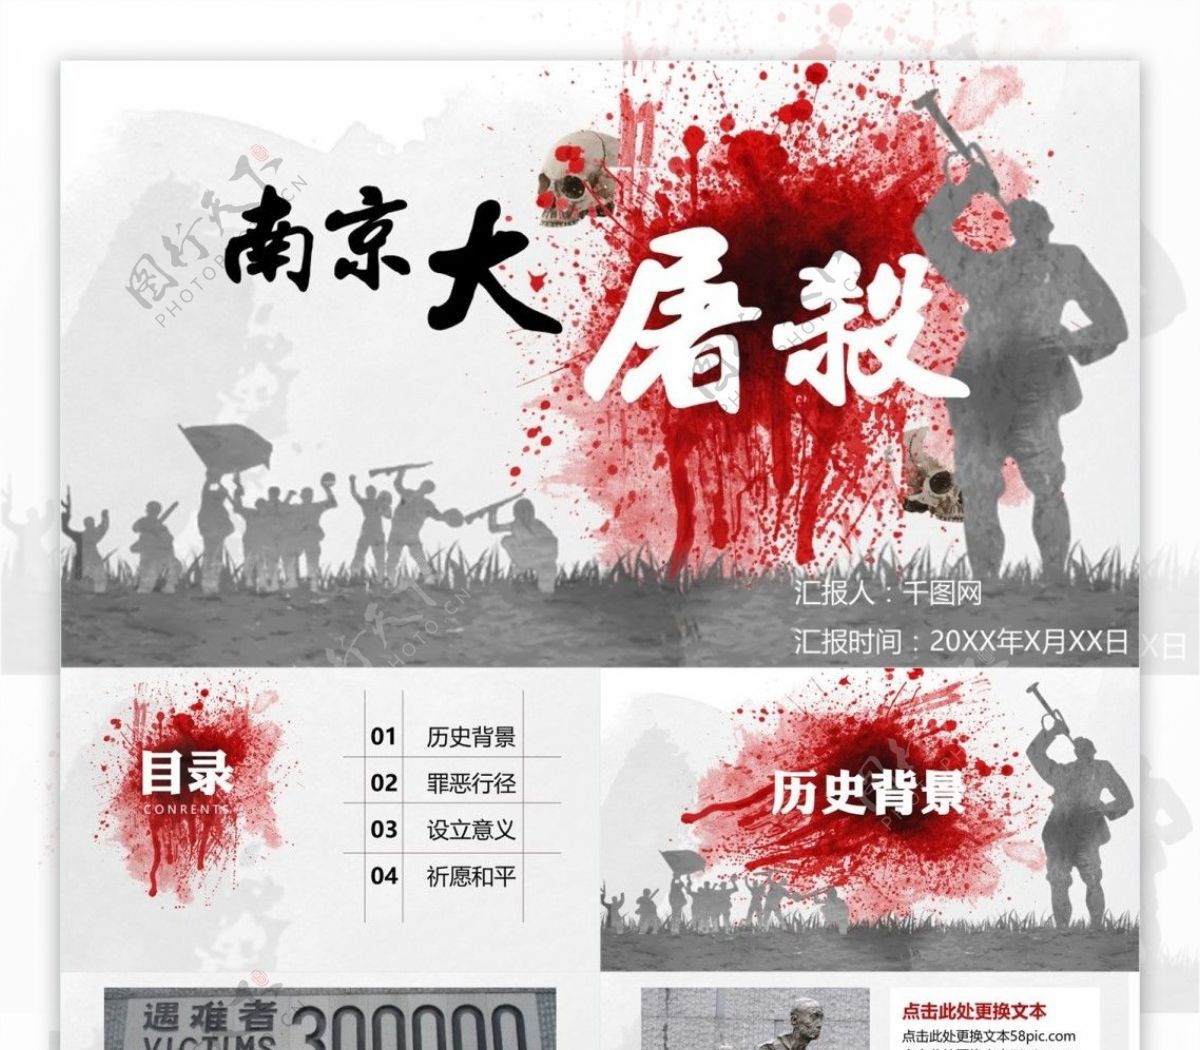 红色色块南京大屠杀纪念学习PPT模板